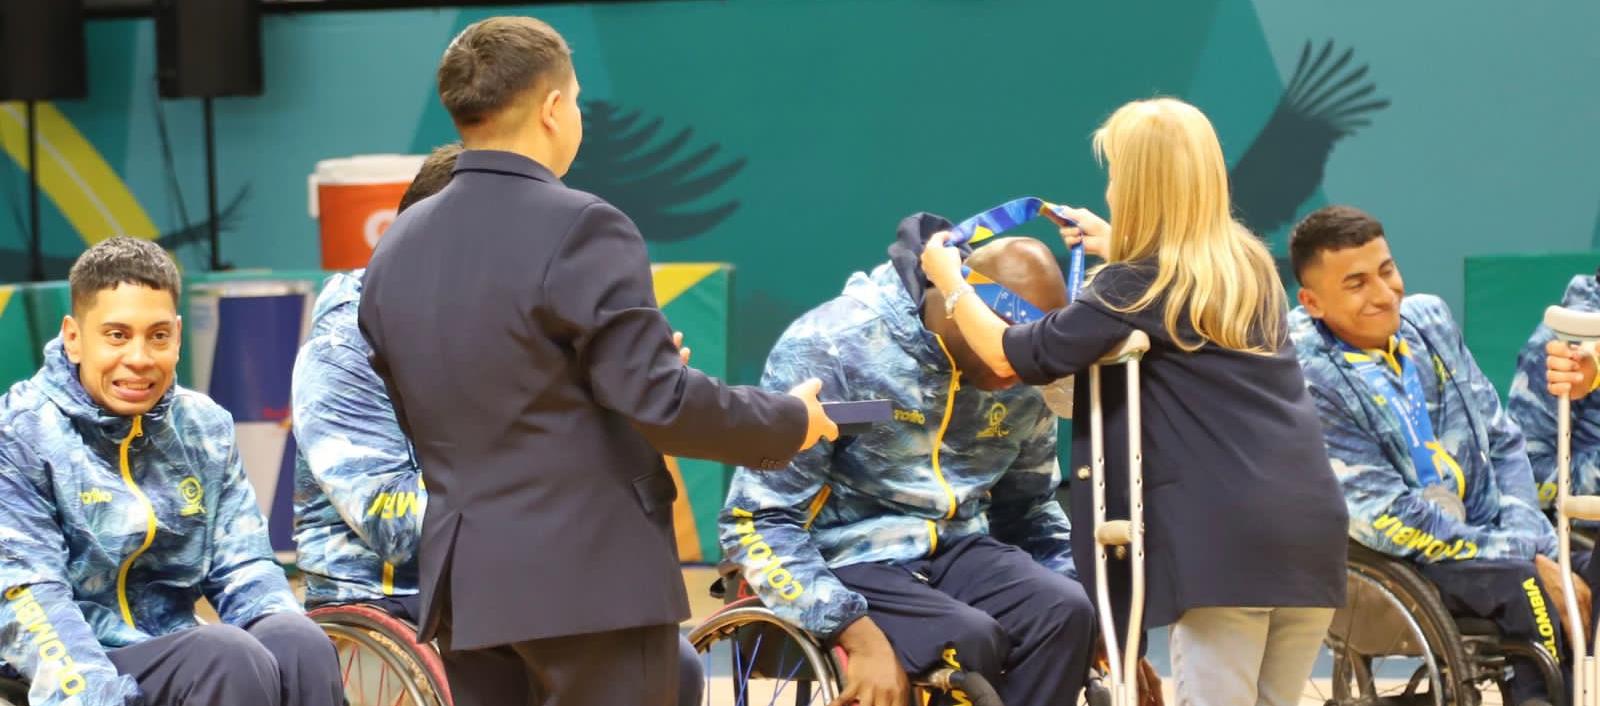 La Gobernadora Elsa Noguera premiando a la selección Colombia de Baloncesto en silla de ruedas.